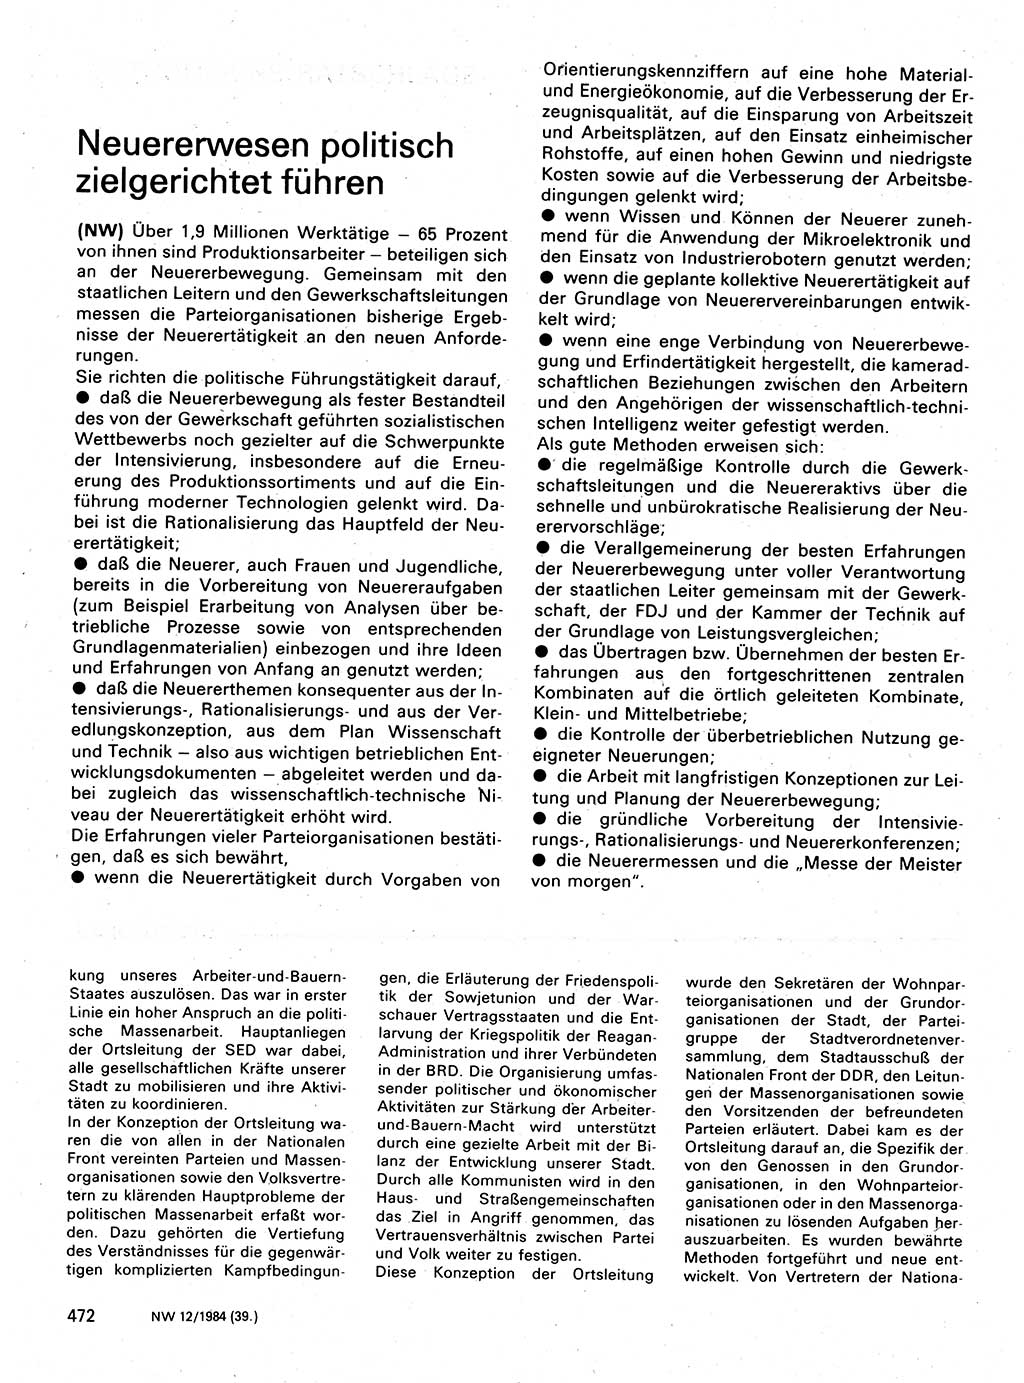 Neuer Weg (NW), Organ des Zentralkomitees (ZK) der SED (Sozialistische Einheitspartei Deutschlands) für Fragen des Parteilebens, 39. Jahrgang [Deutsche Demokratische Republik (DDR)] 1984, Seite 472 (NW ZK SED DDR 1984, S. 472)